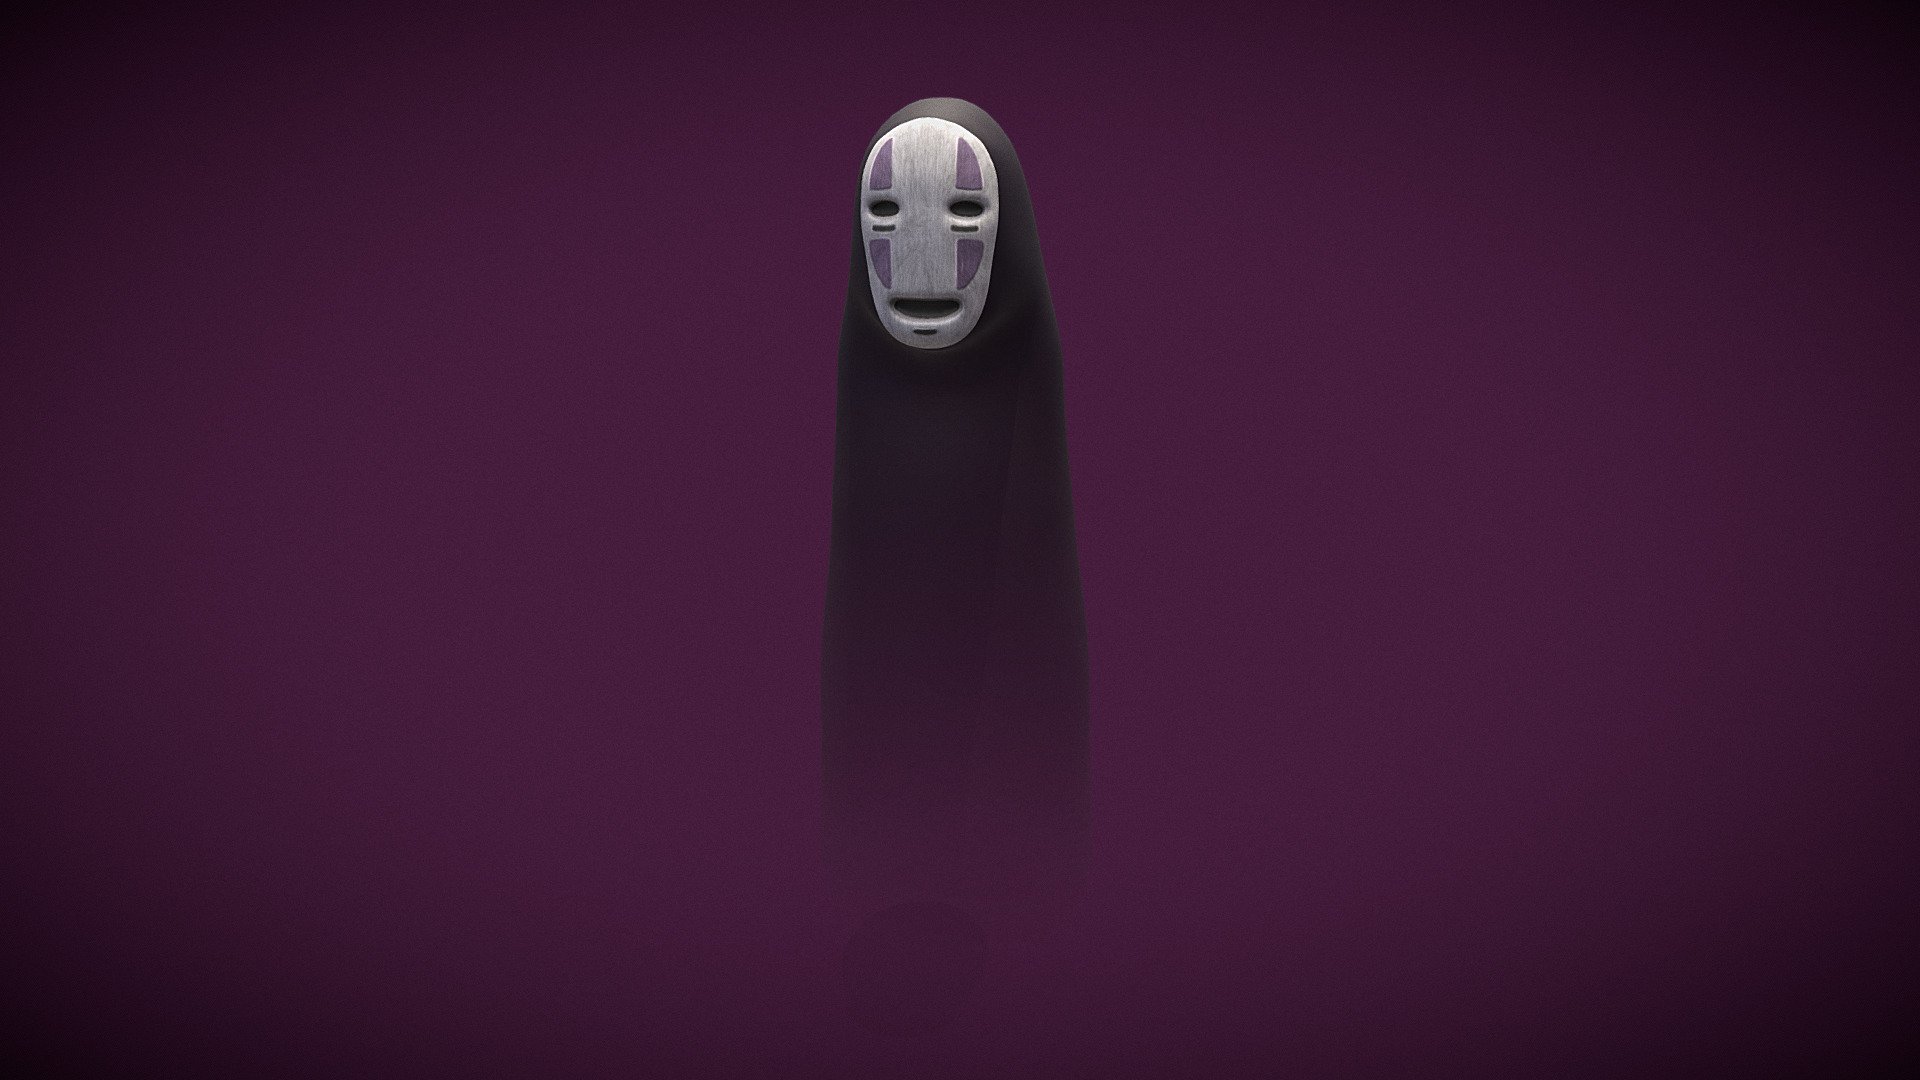 El viaje de Chihiro - sin cara, no face, kaonashi - 3D model by ivan alarcon (@capivan) 3d model